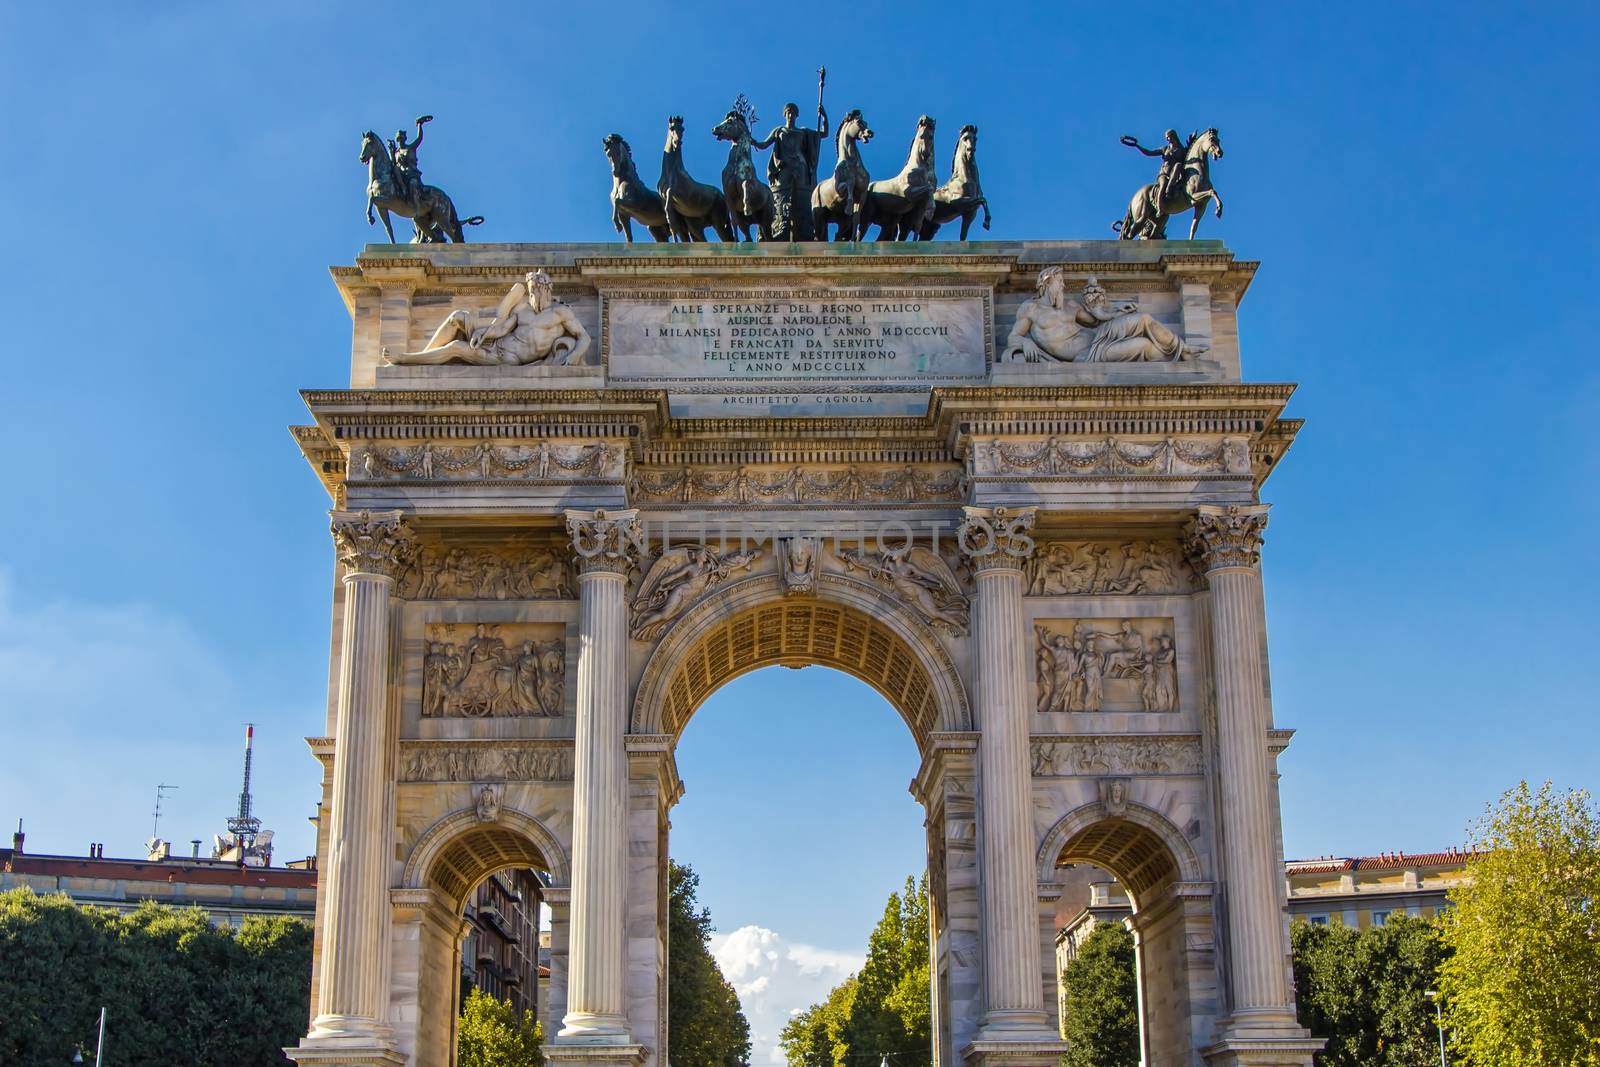 The Napoleonic Arco della Pace monumental arch downtown in Milano, near the Porta Sempione